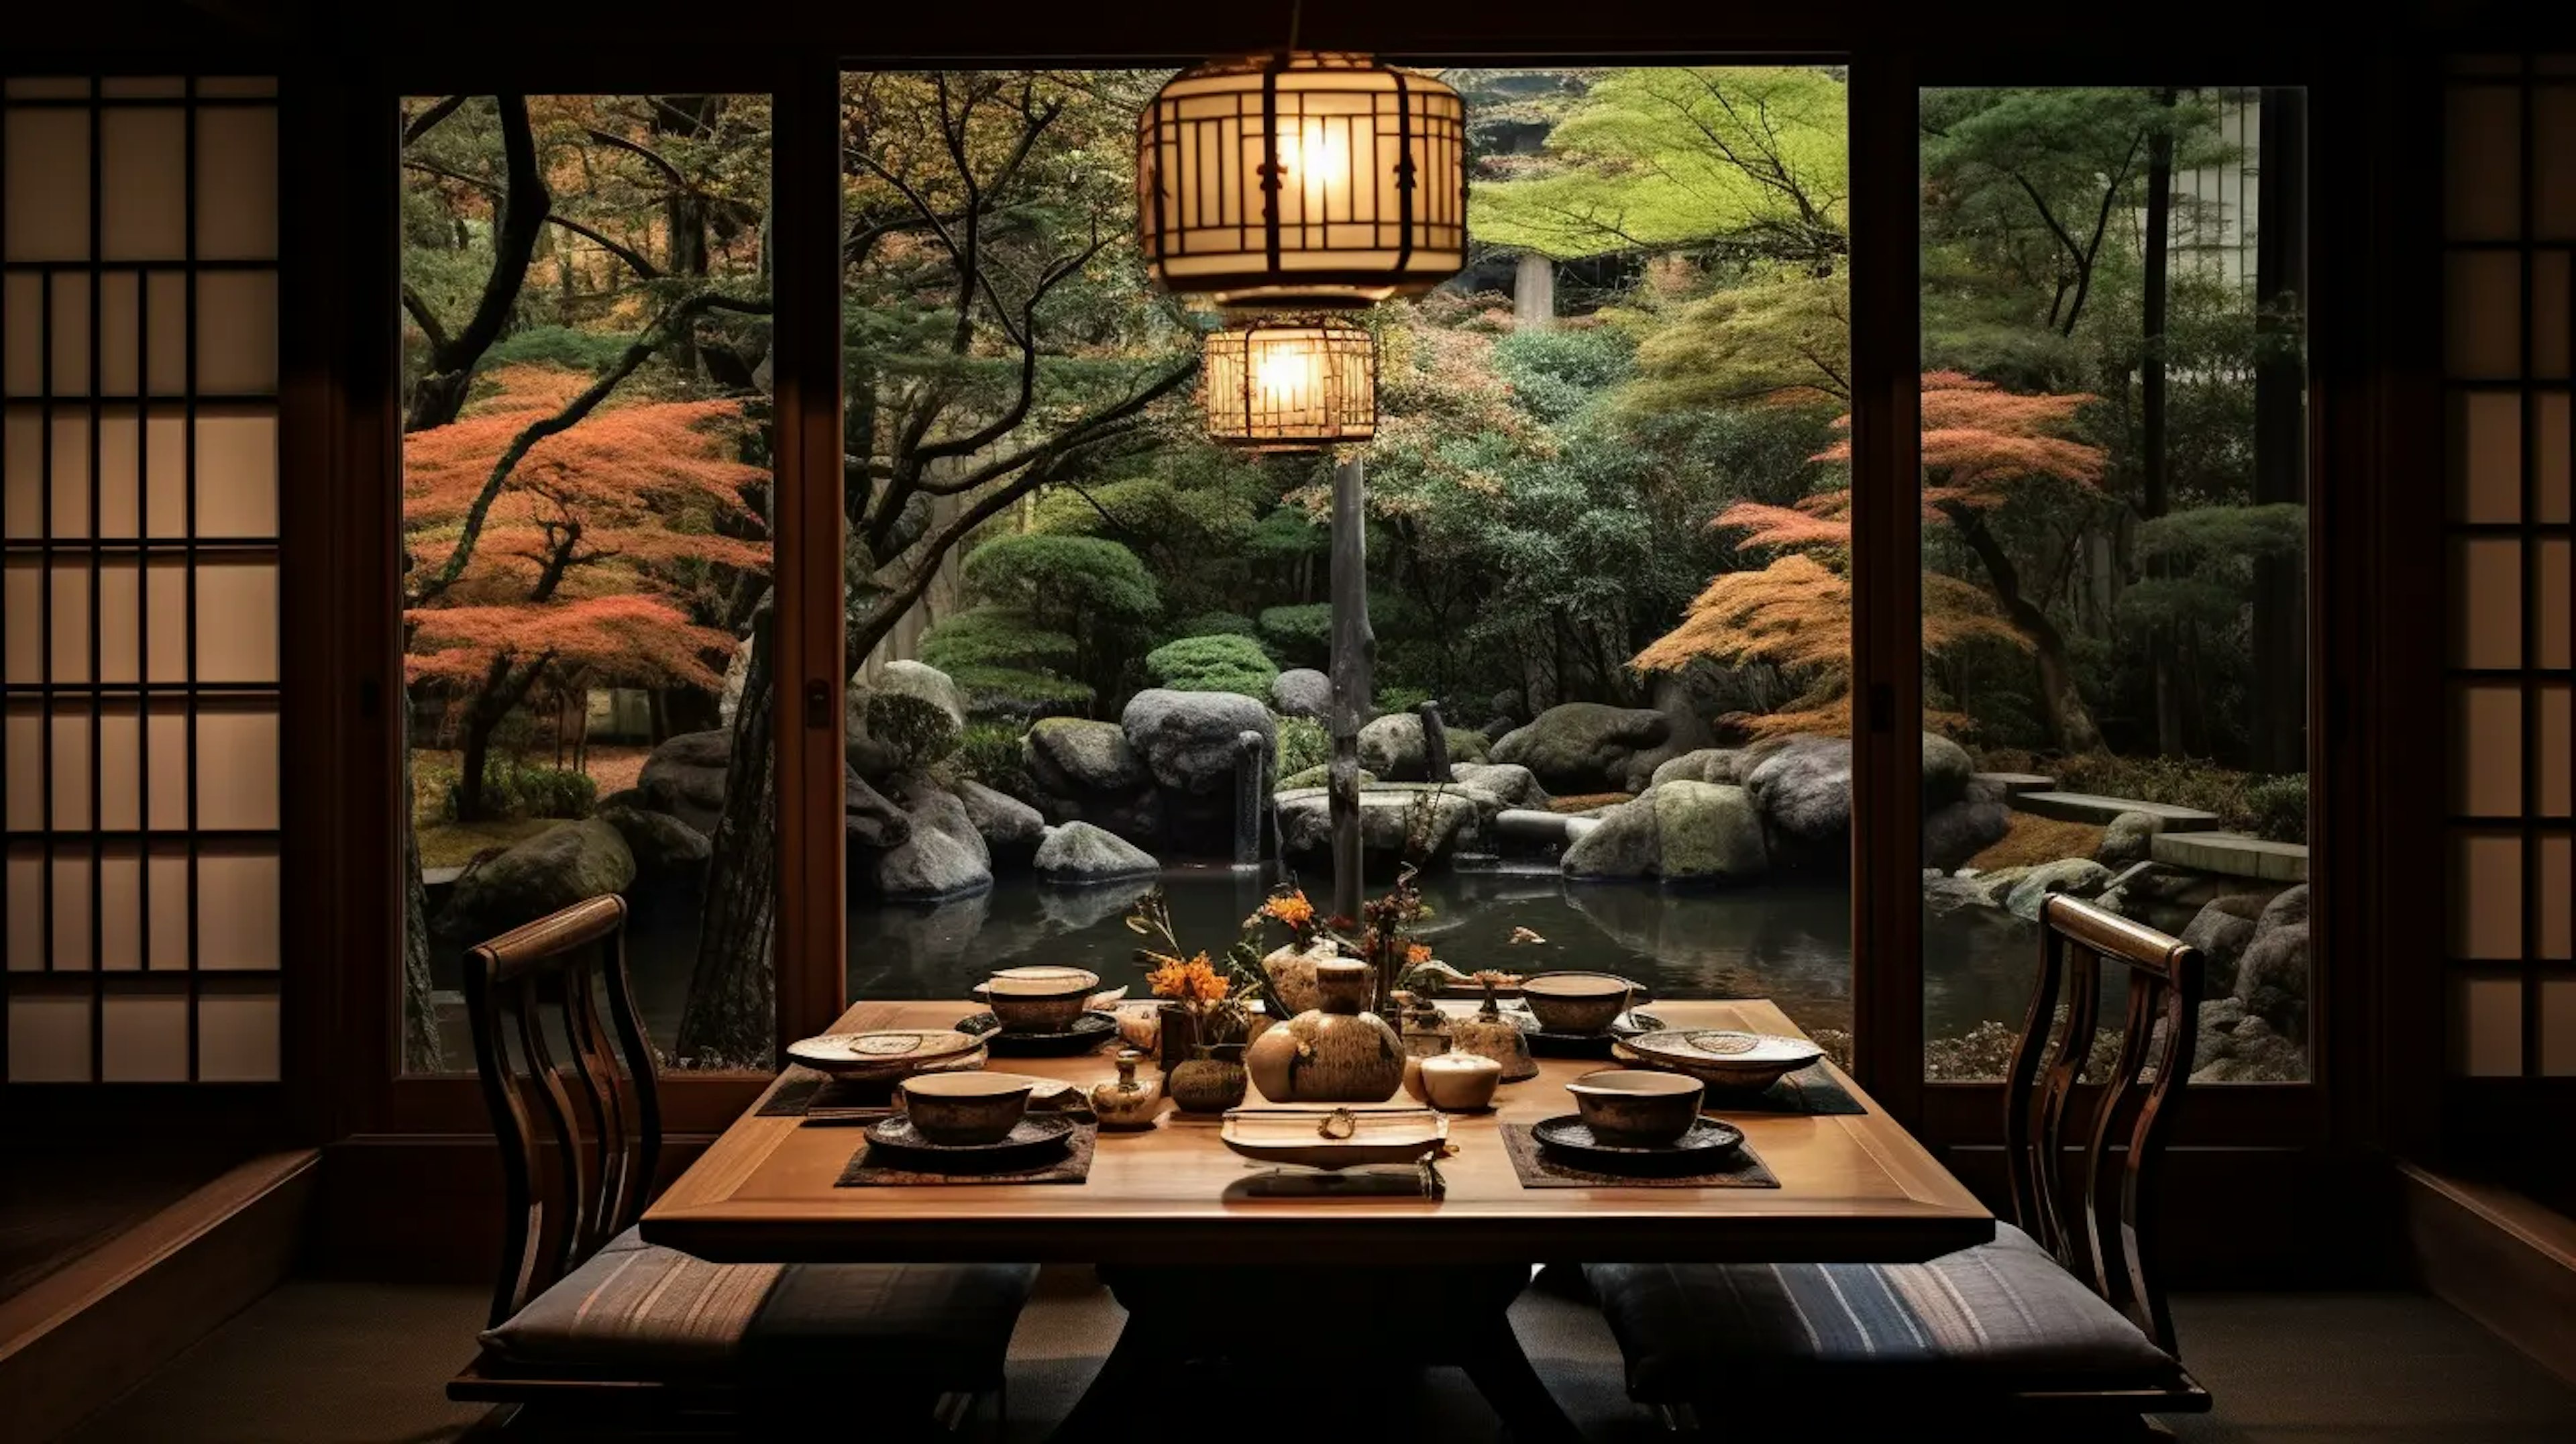 traditional Japanese dining setting representing Omotenashi hospitality